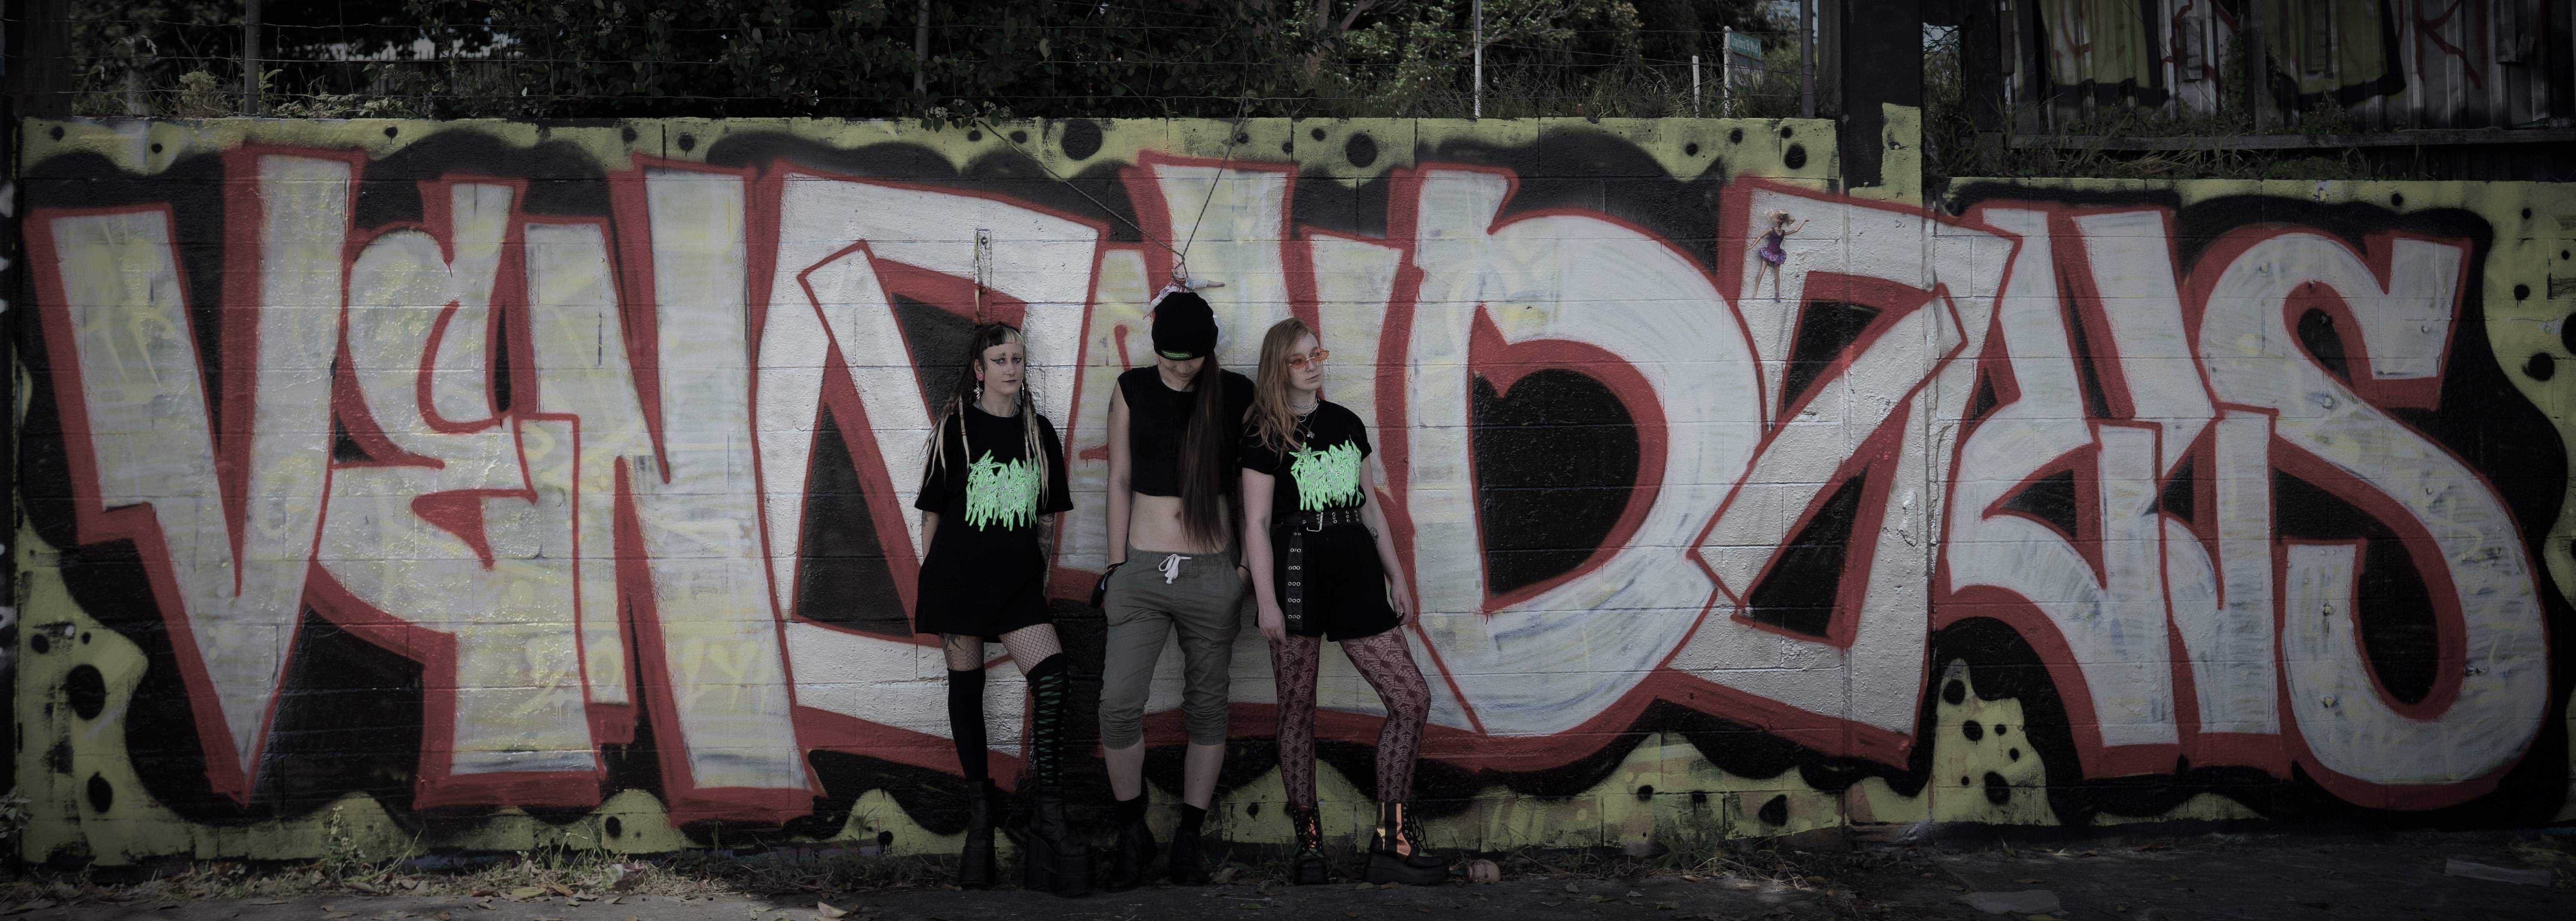 venom dolls graffiti group shot